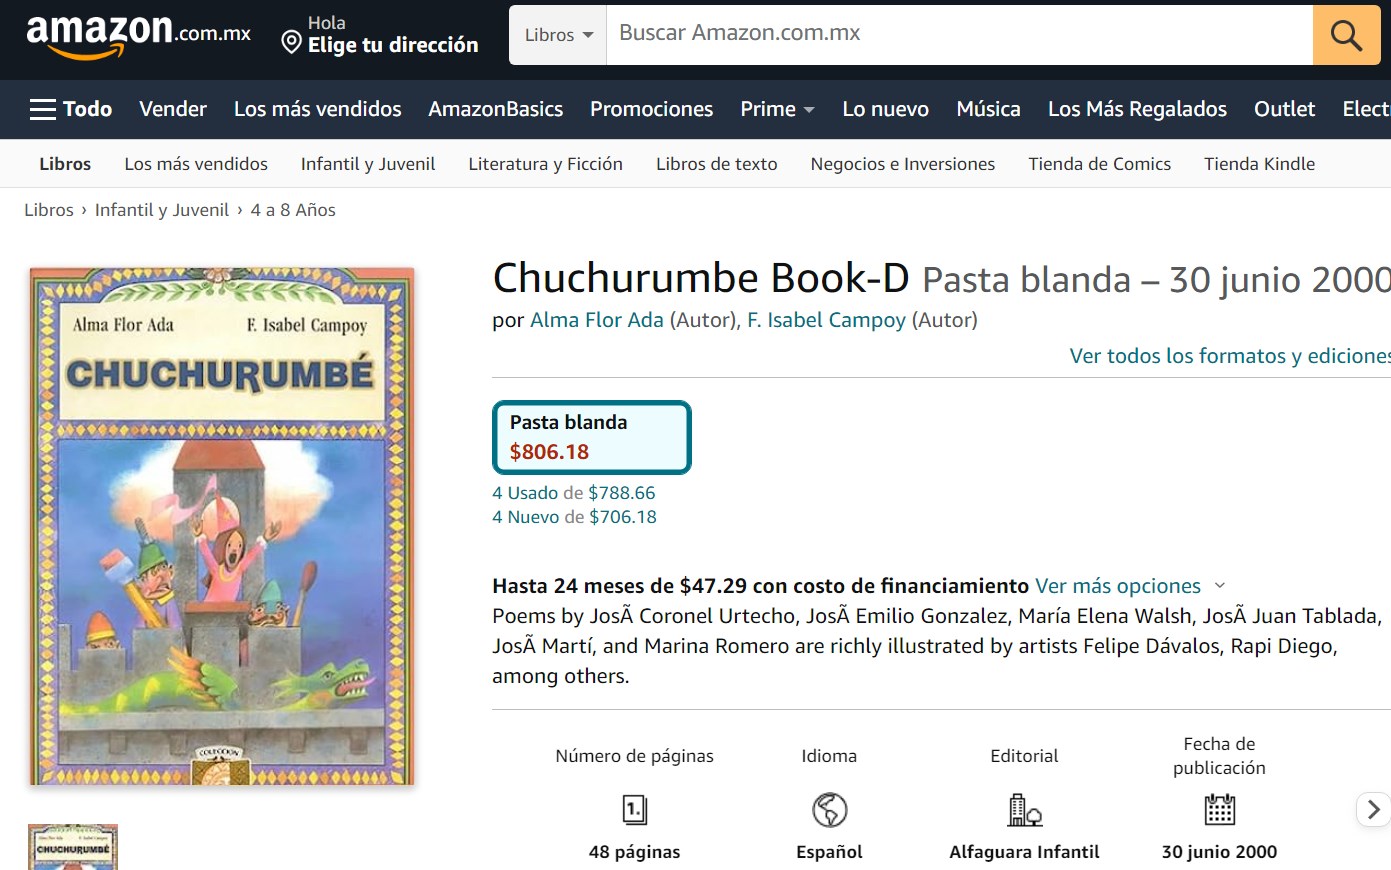 Libro: Chuchurumbé por Alma Flor Ada